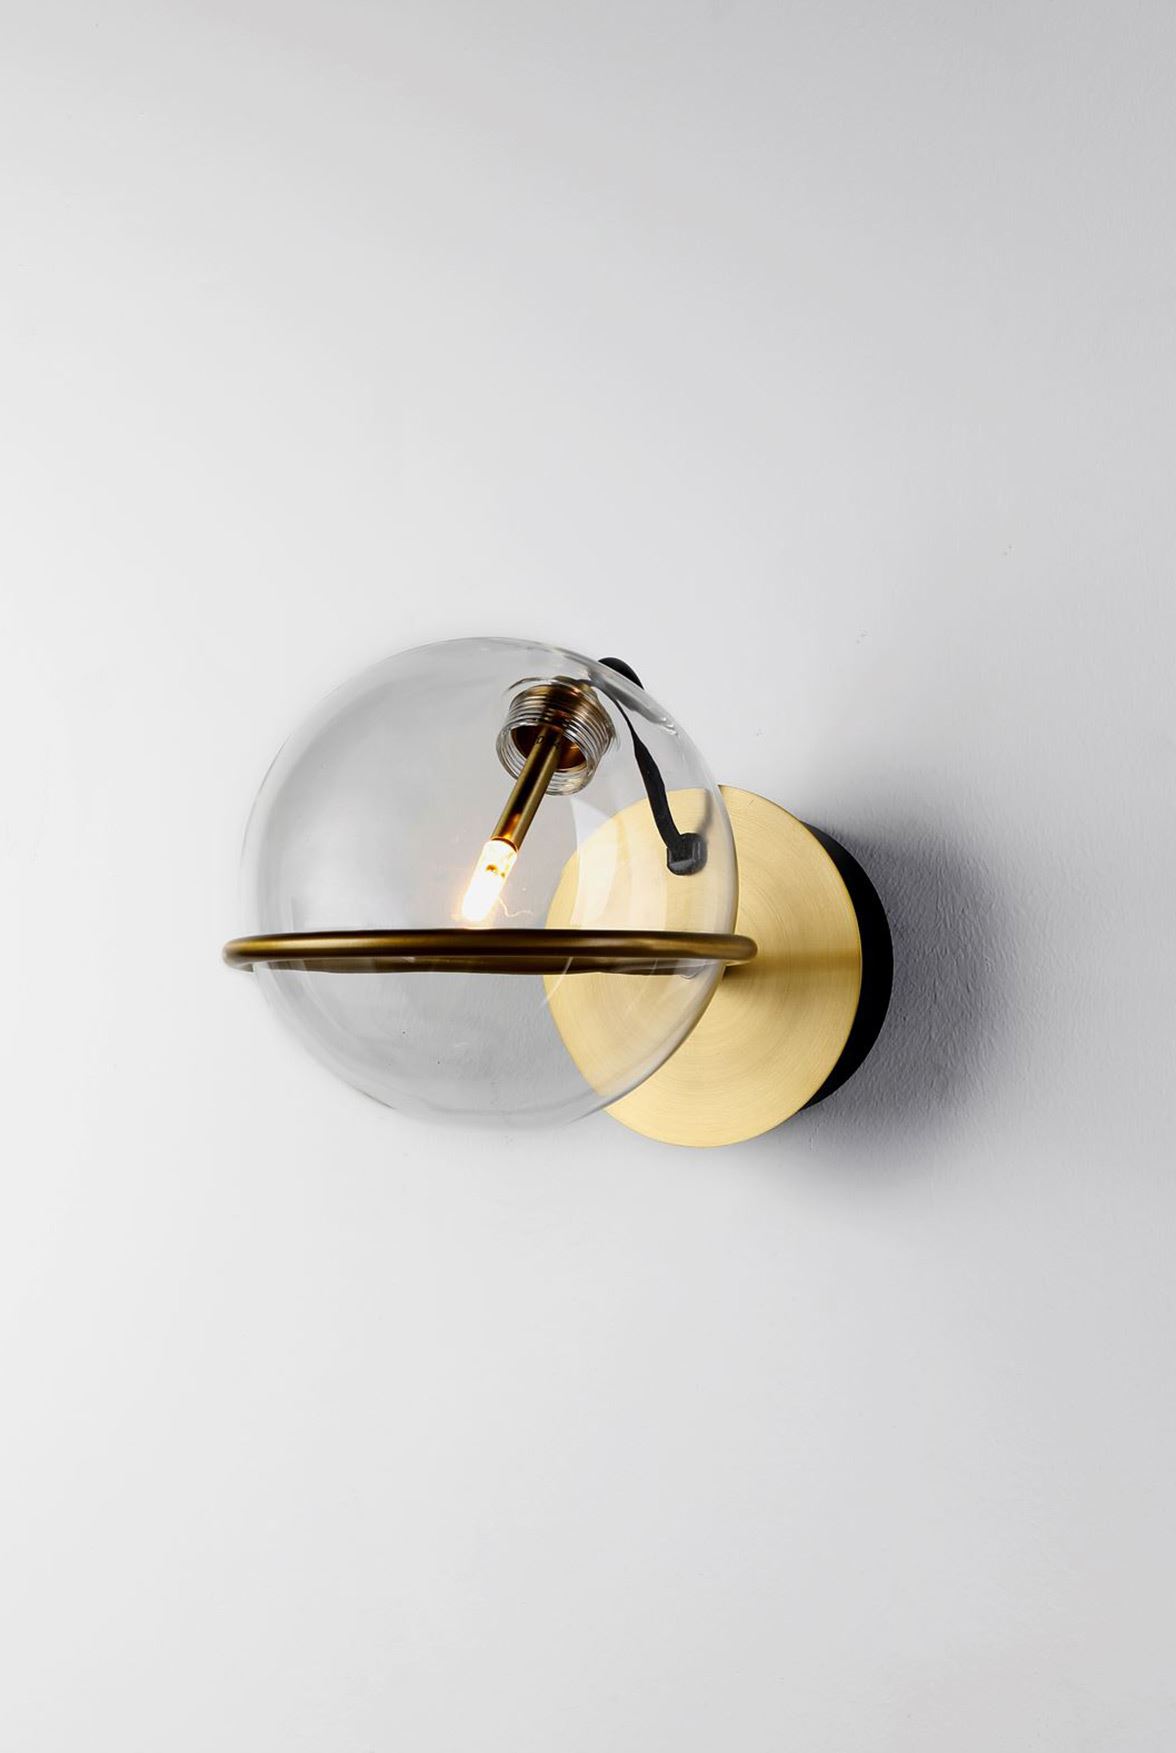 גופי תאורה בקטגוריית מנורות קיר שם המוצר Bolster Ring • Dori Kimhi Lighting 2566